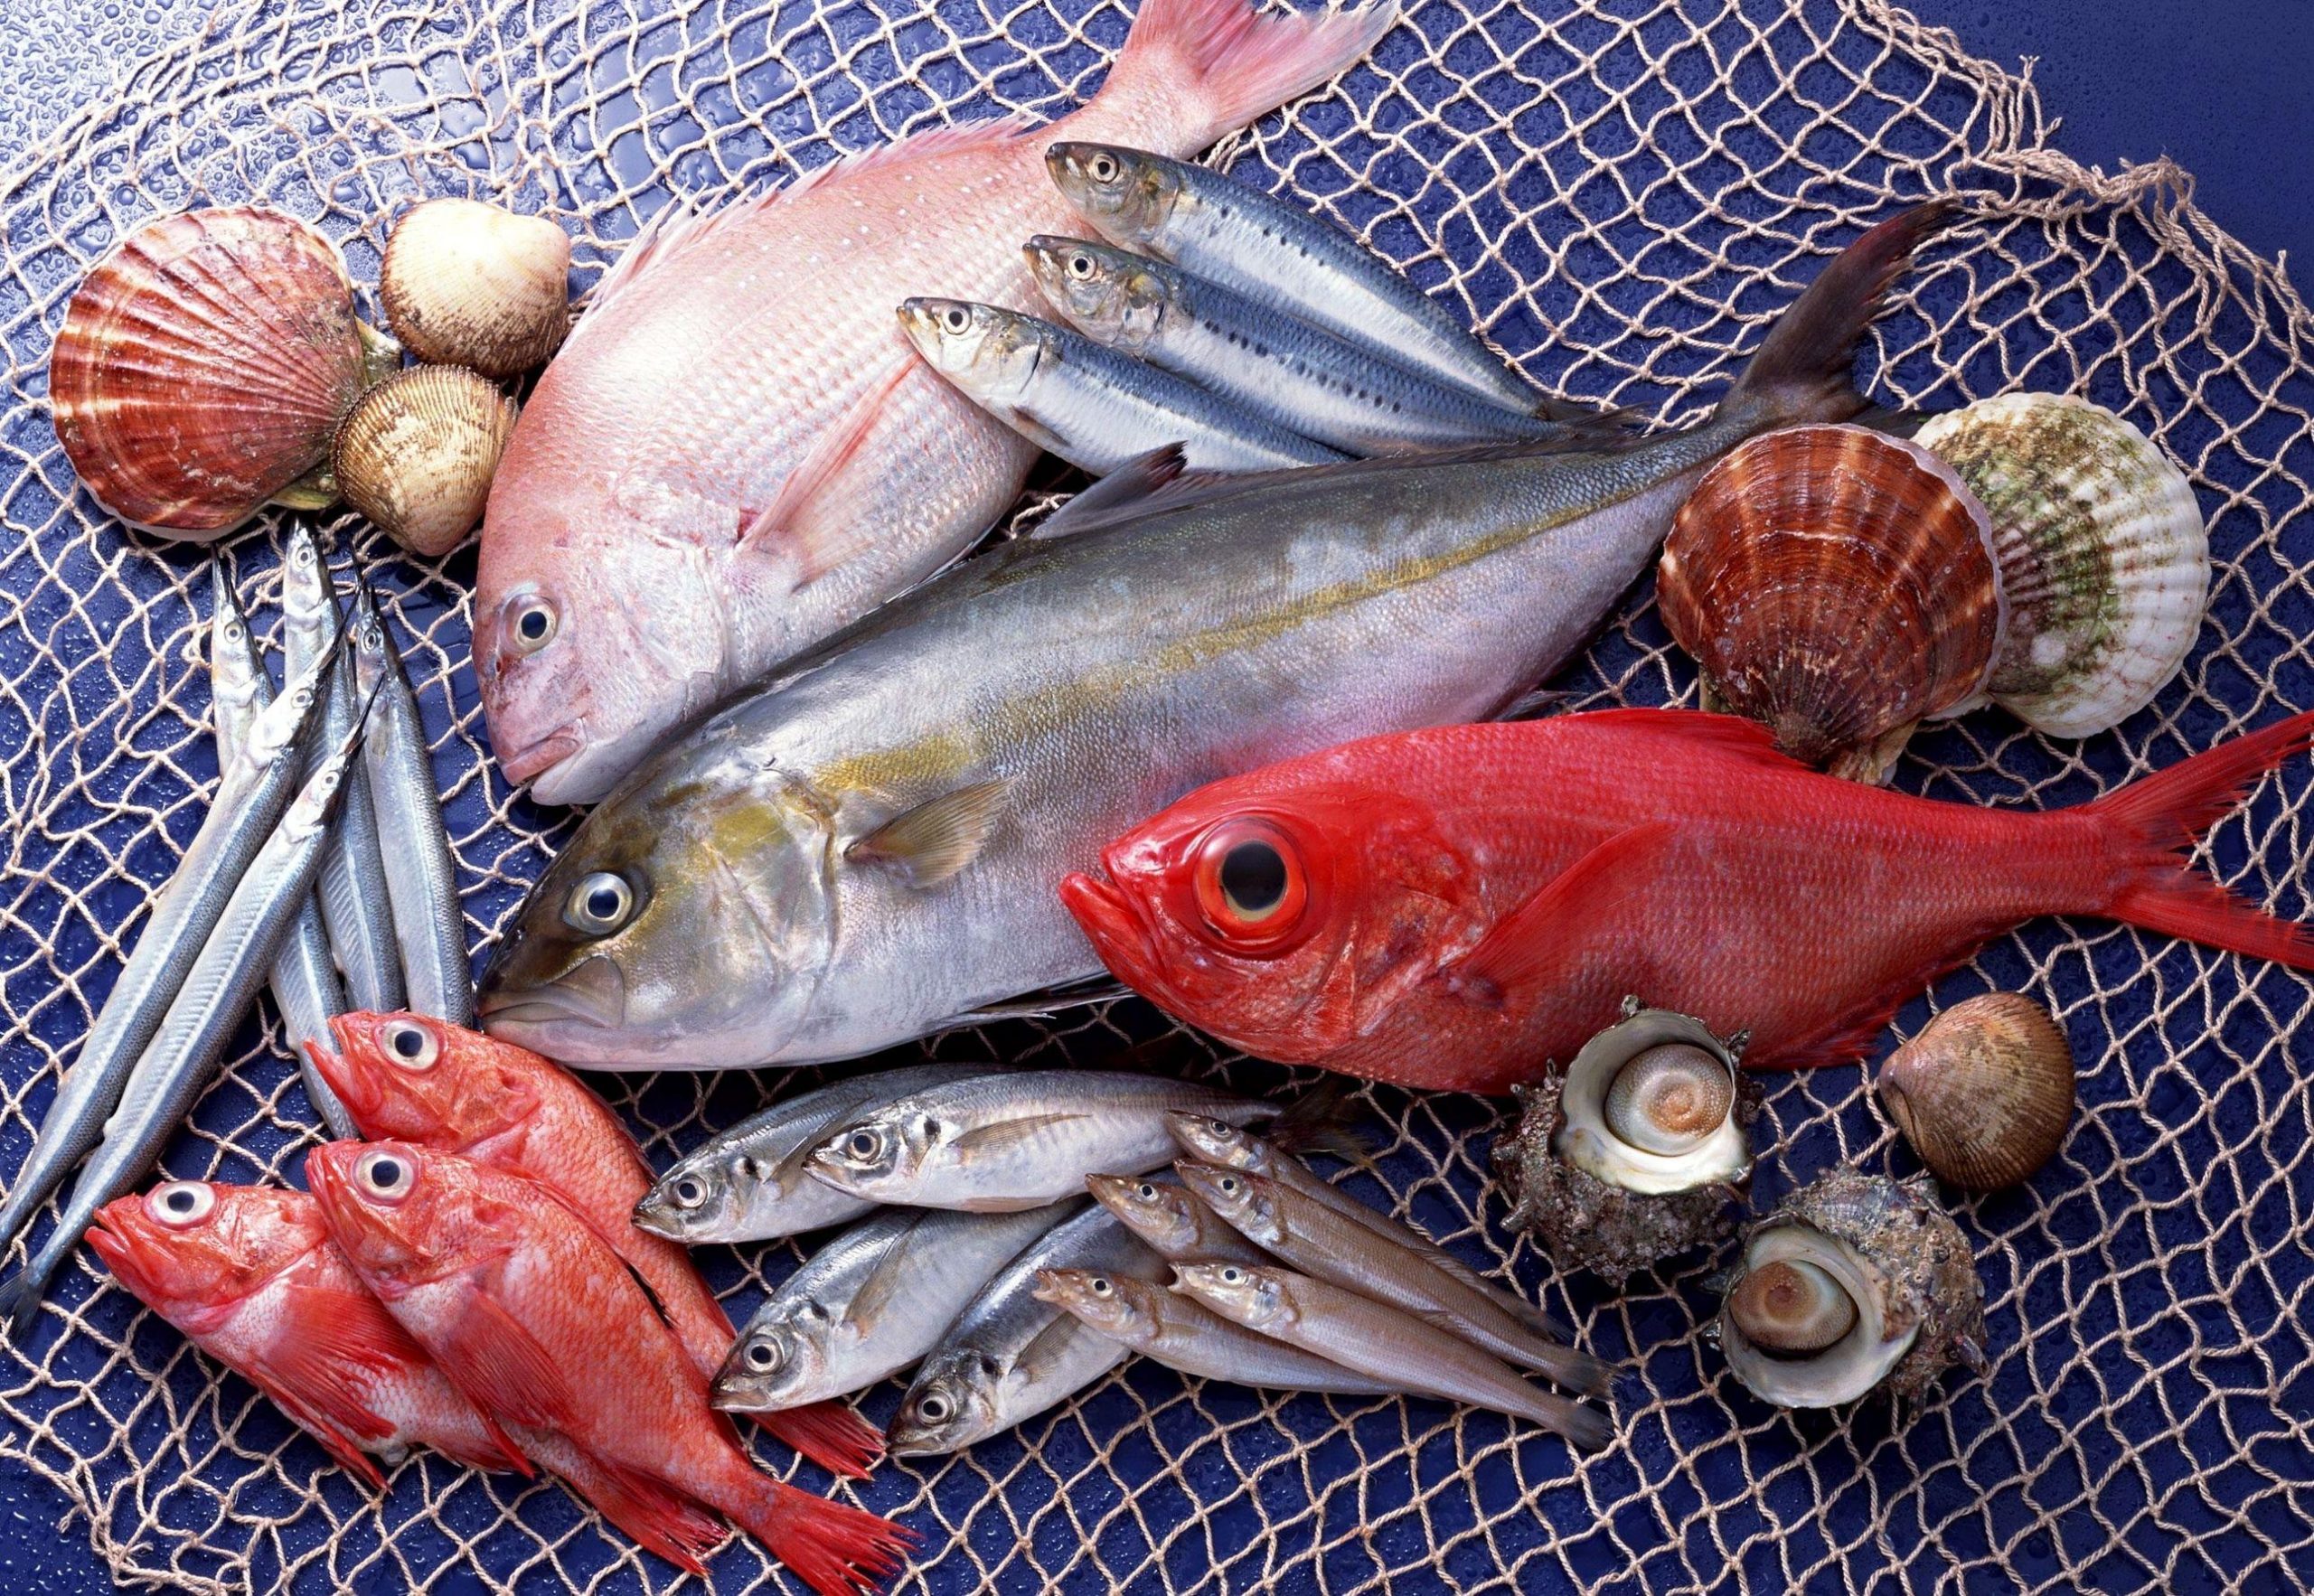 أسعار المأكولات البحرية في سوق العبور الثلاثاء 23 يناير (سمك – جمبري – استاكوزا – كاليماري) بسعر الجملة